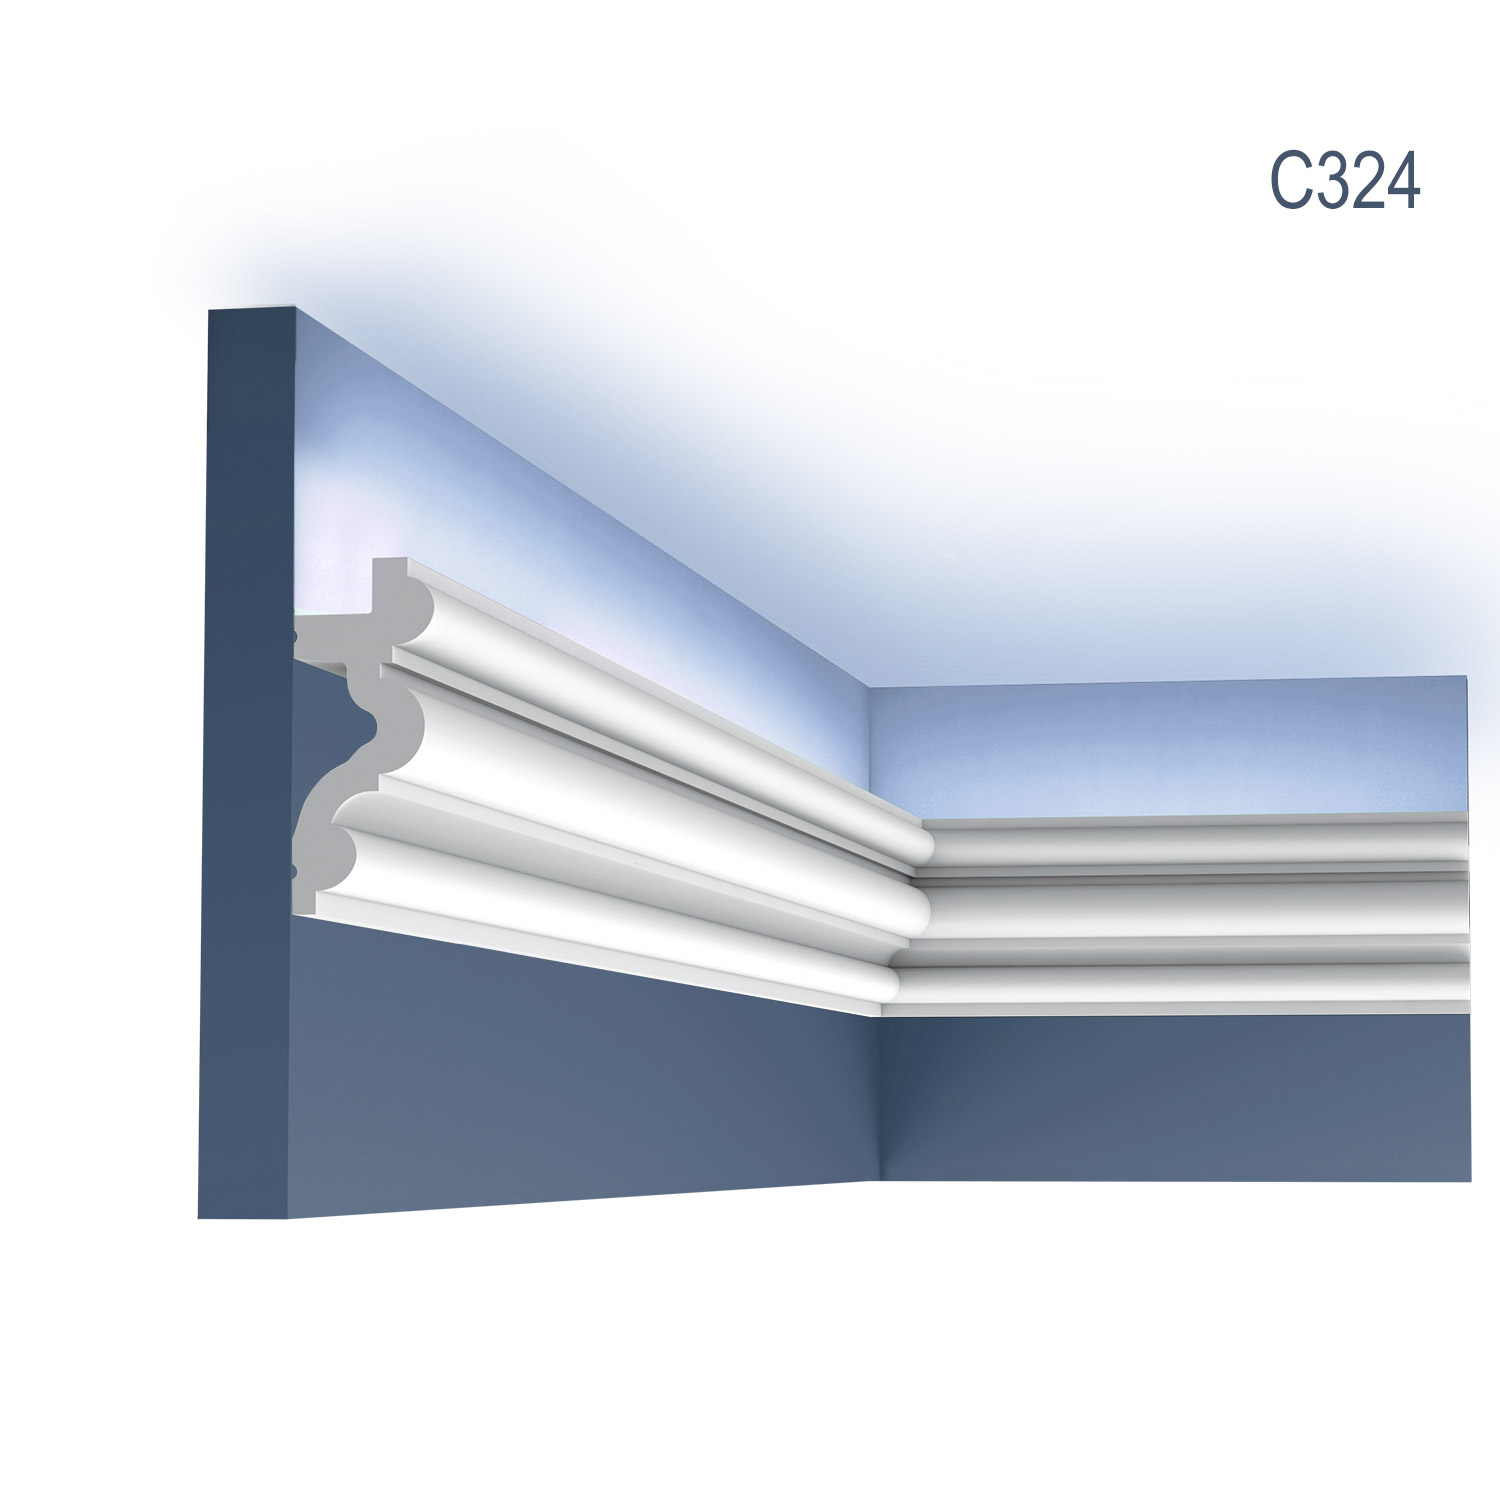 Cornisa C324 pentru tavan, alba, vopsibila, rigida, calitate excelenta, Belgia, din Poliuretan rigid, L 200 x H 8,3 x L 3,4 cm